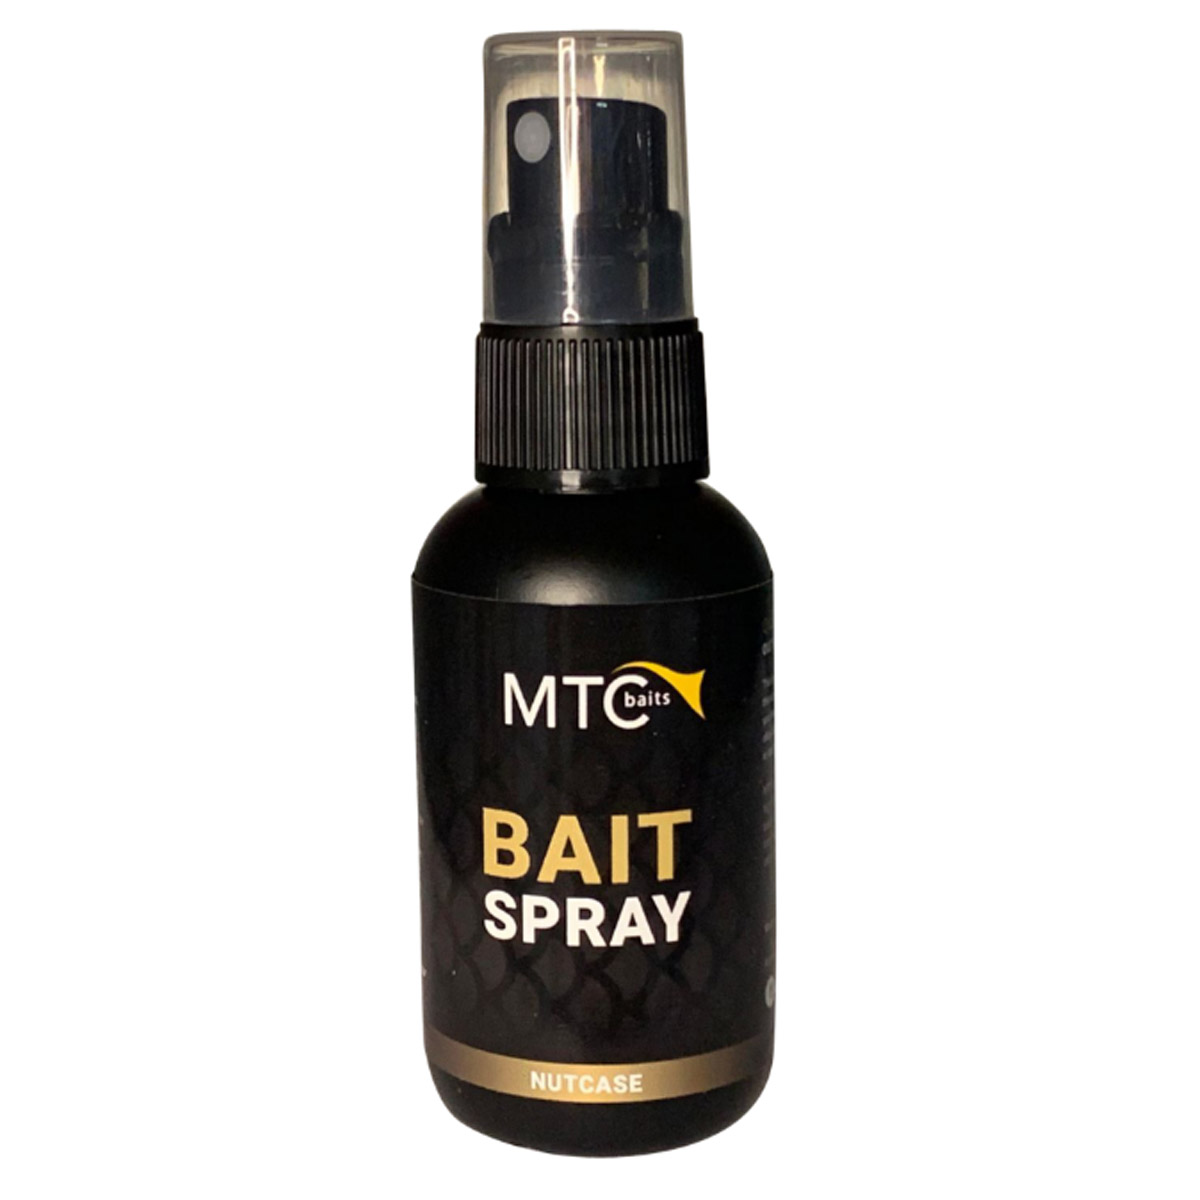 MTC Baits Bait Spray NutCase